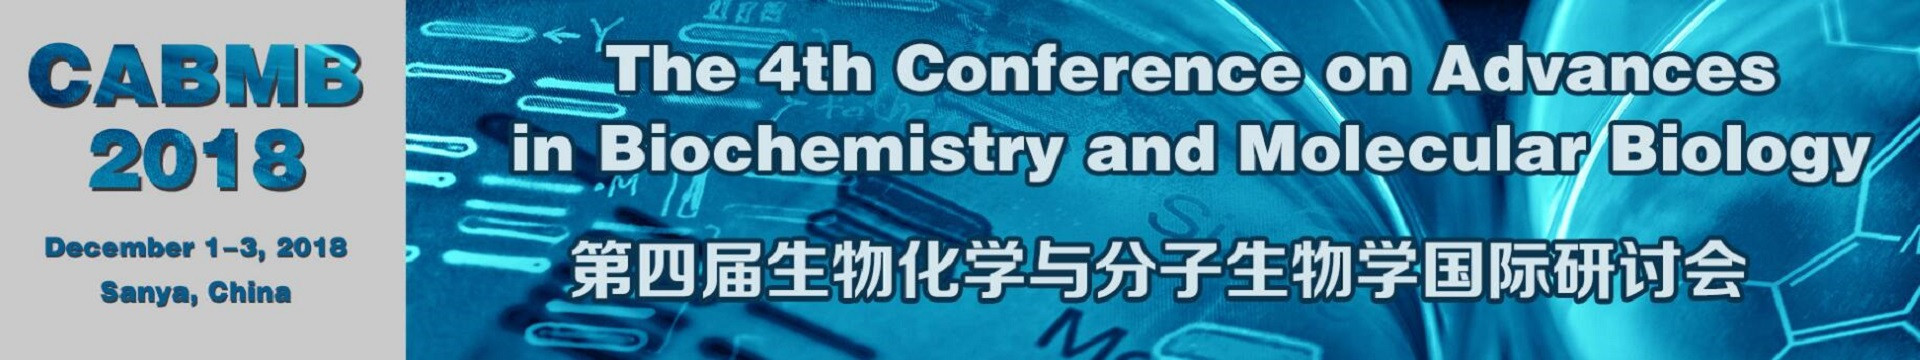 第四届生物化学与分子生物学国际研讨会(CABMB 2018)